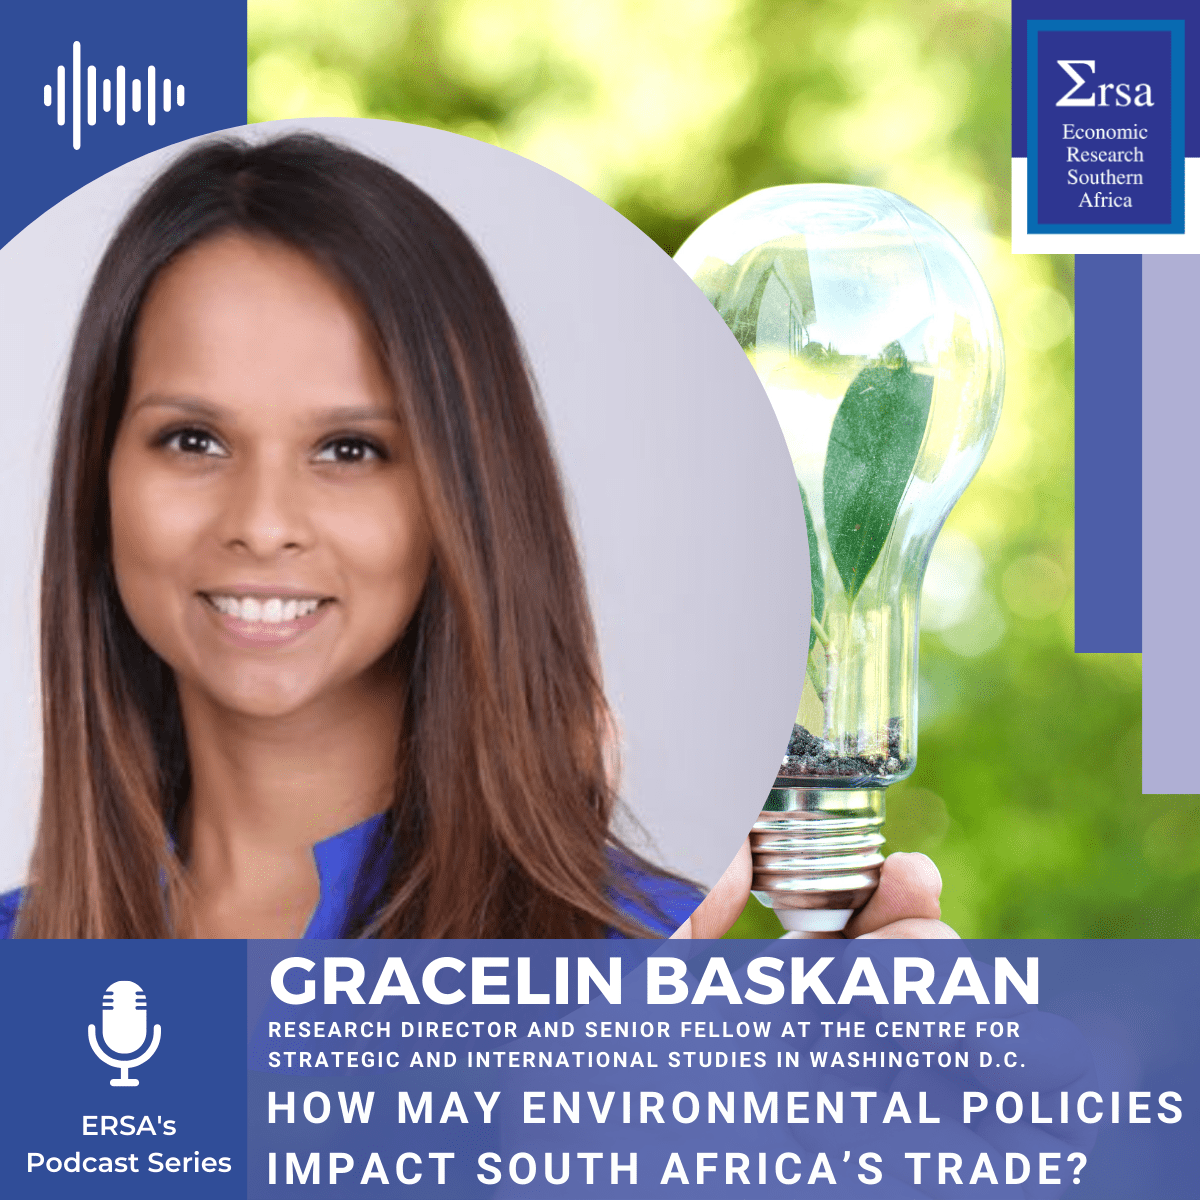 Gracelin Baskaran on how environmental policies may impact South African trade